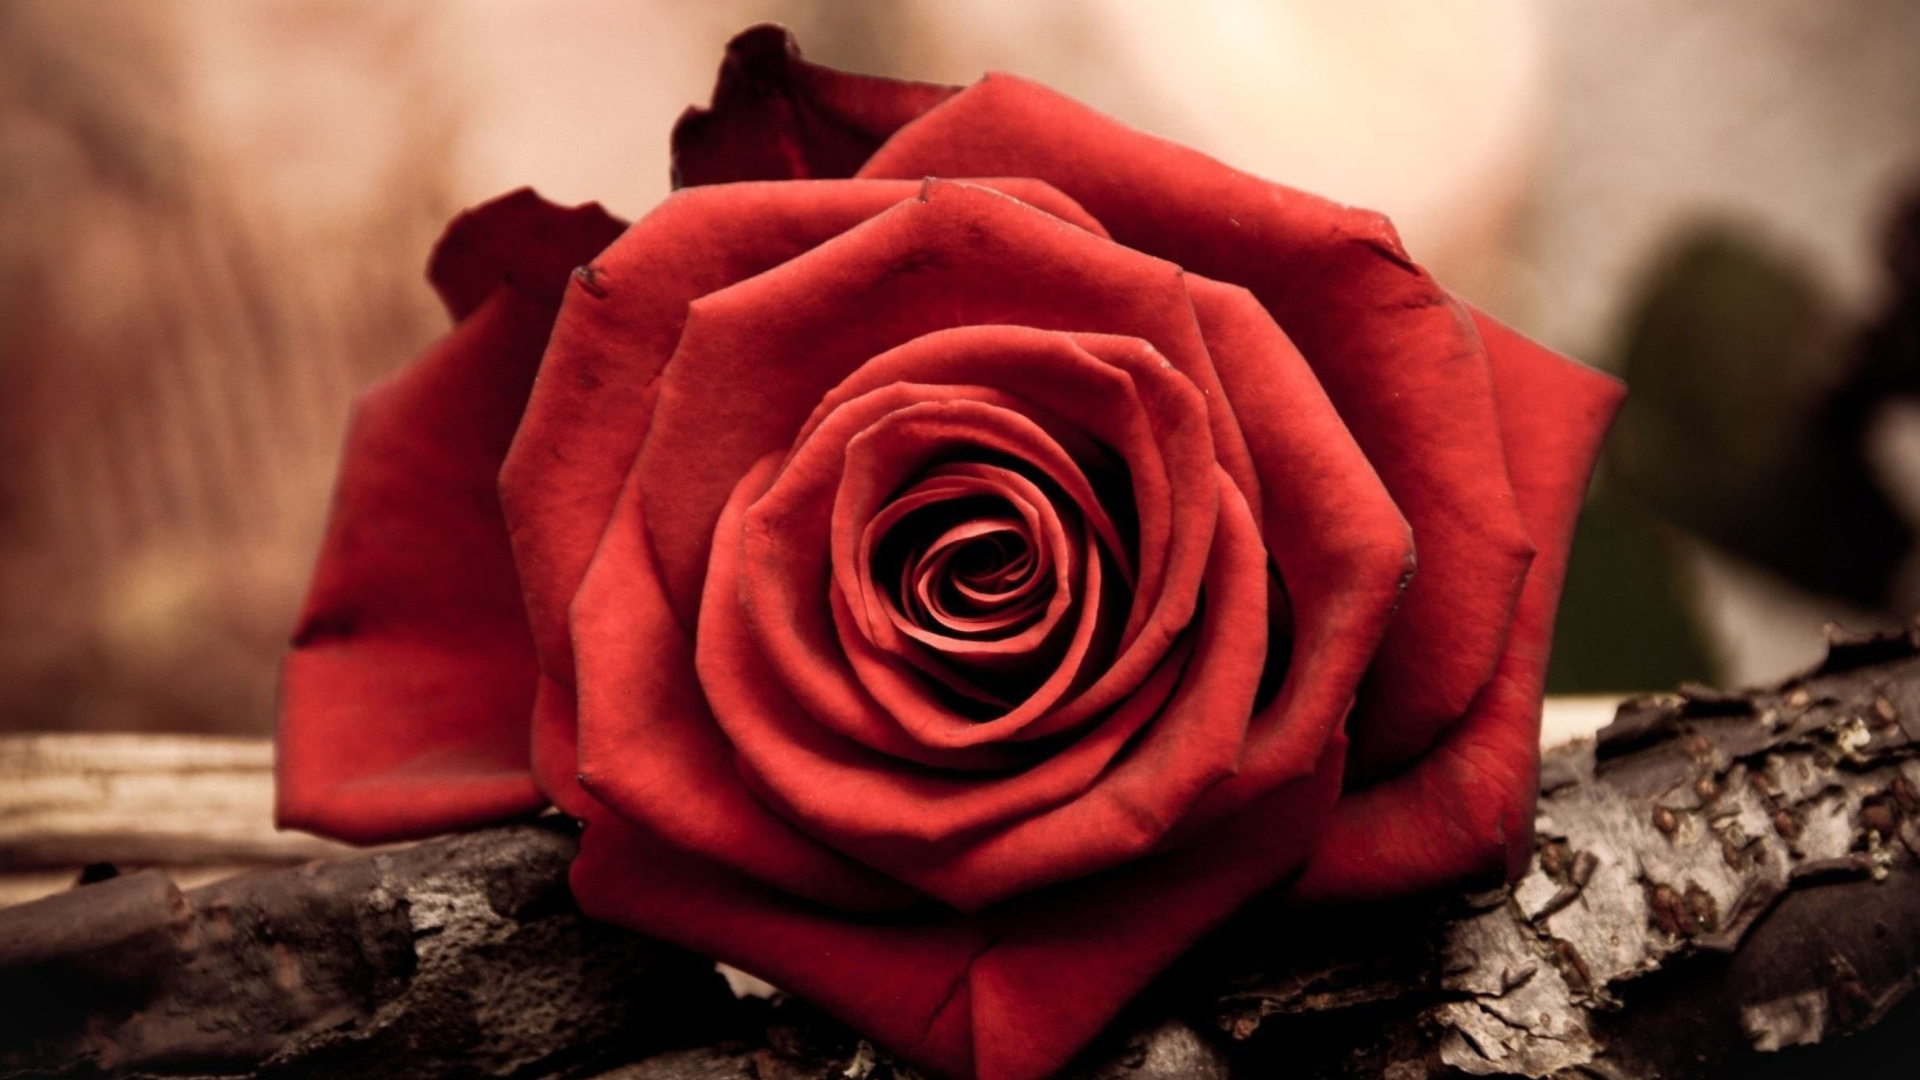 Rose Symbol Of Love wallpaper 1920x1080